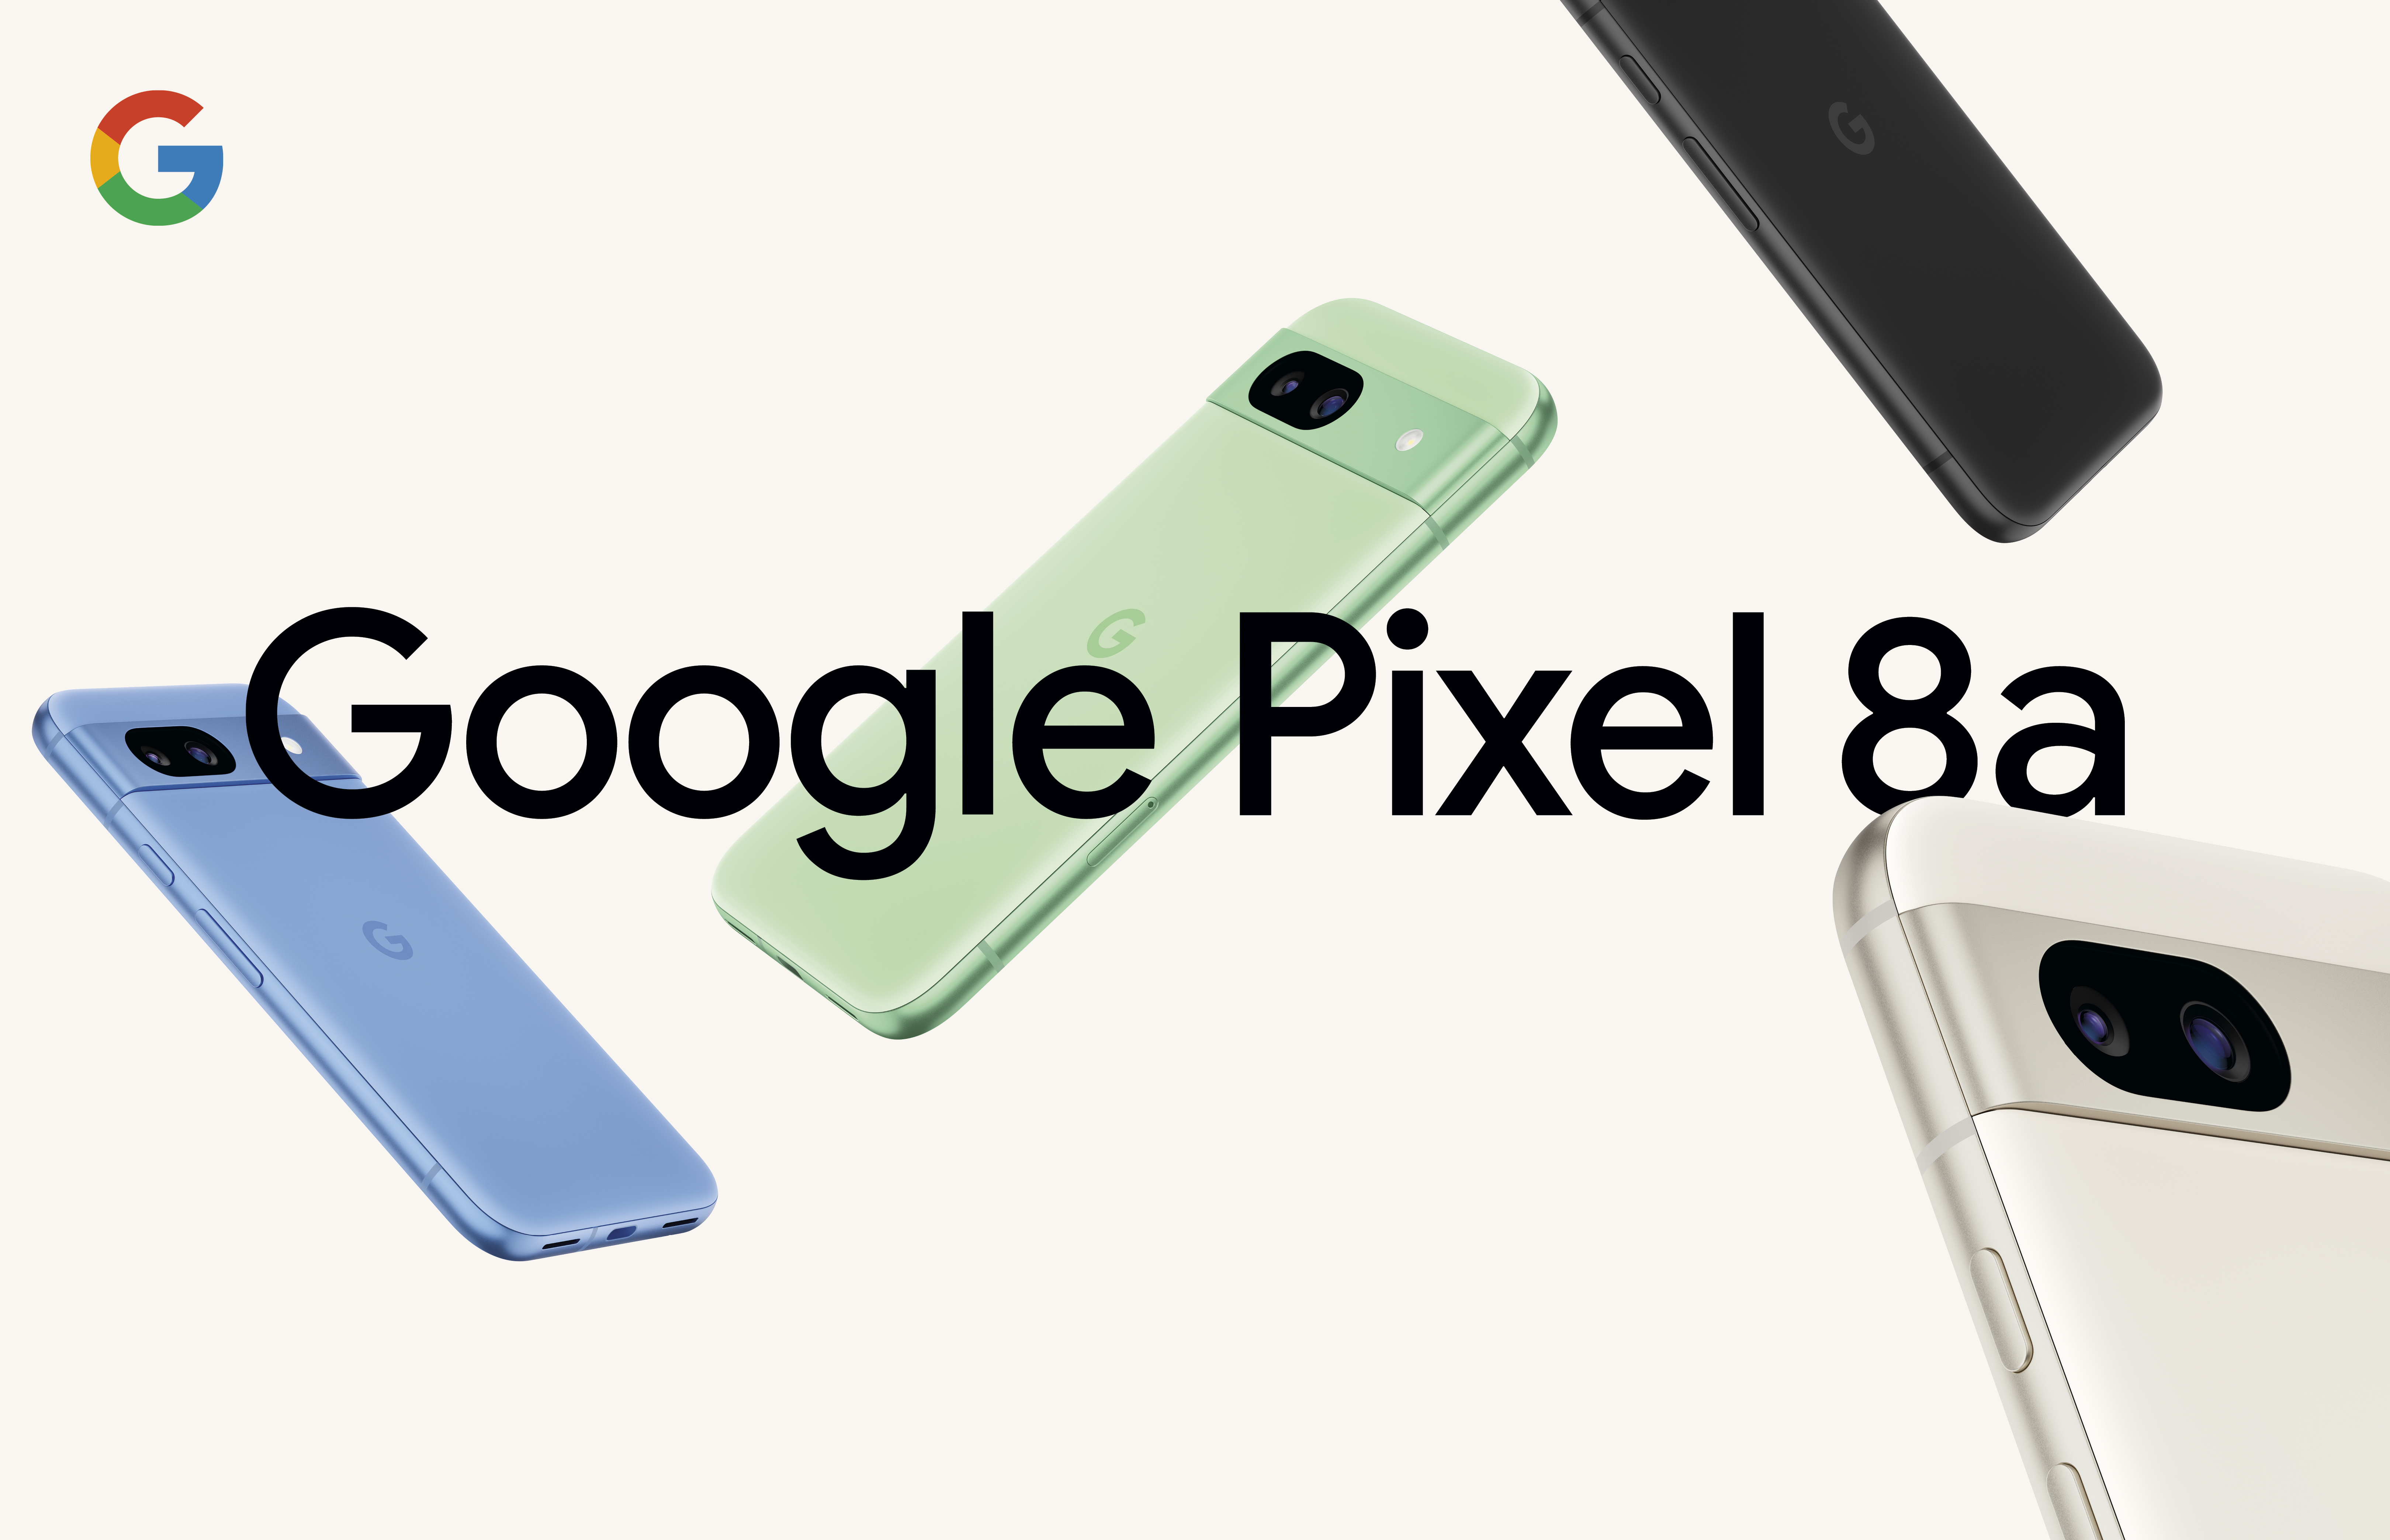 Официально представлен Google Pixel 8a за 499 долларов, с дисплеем 120 Гц, 7 лет обновлений